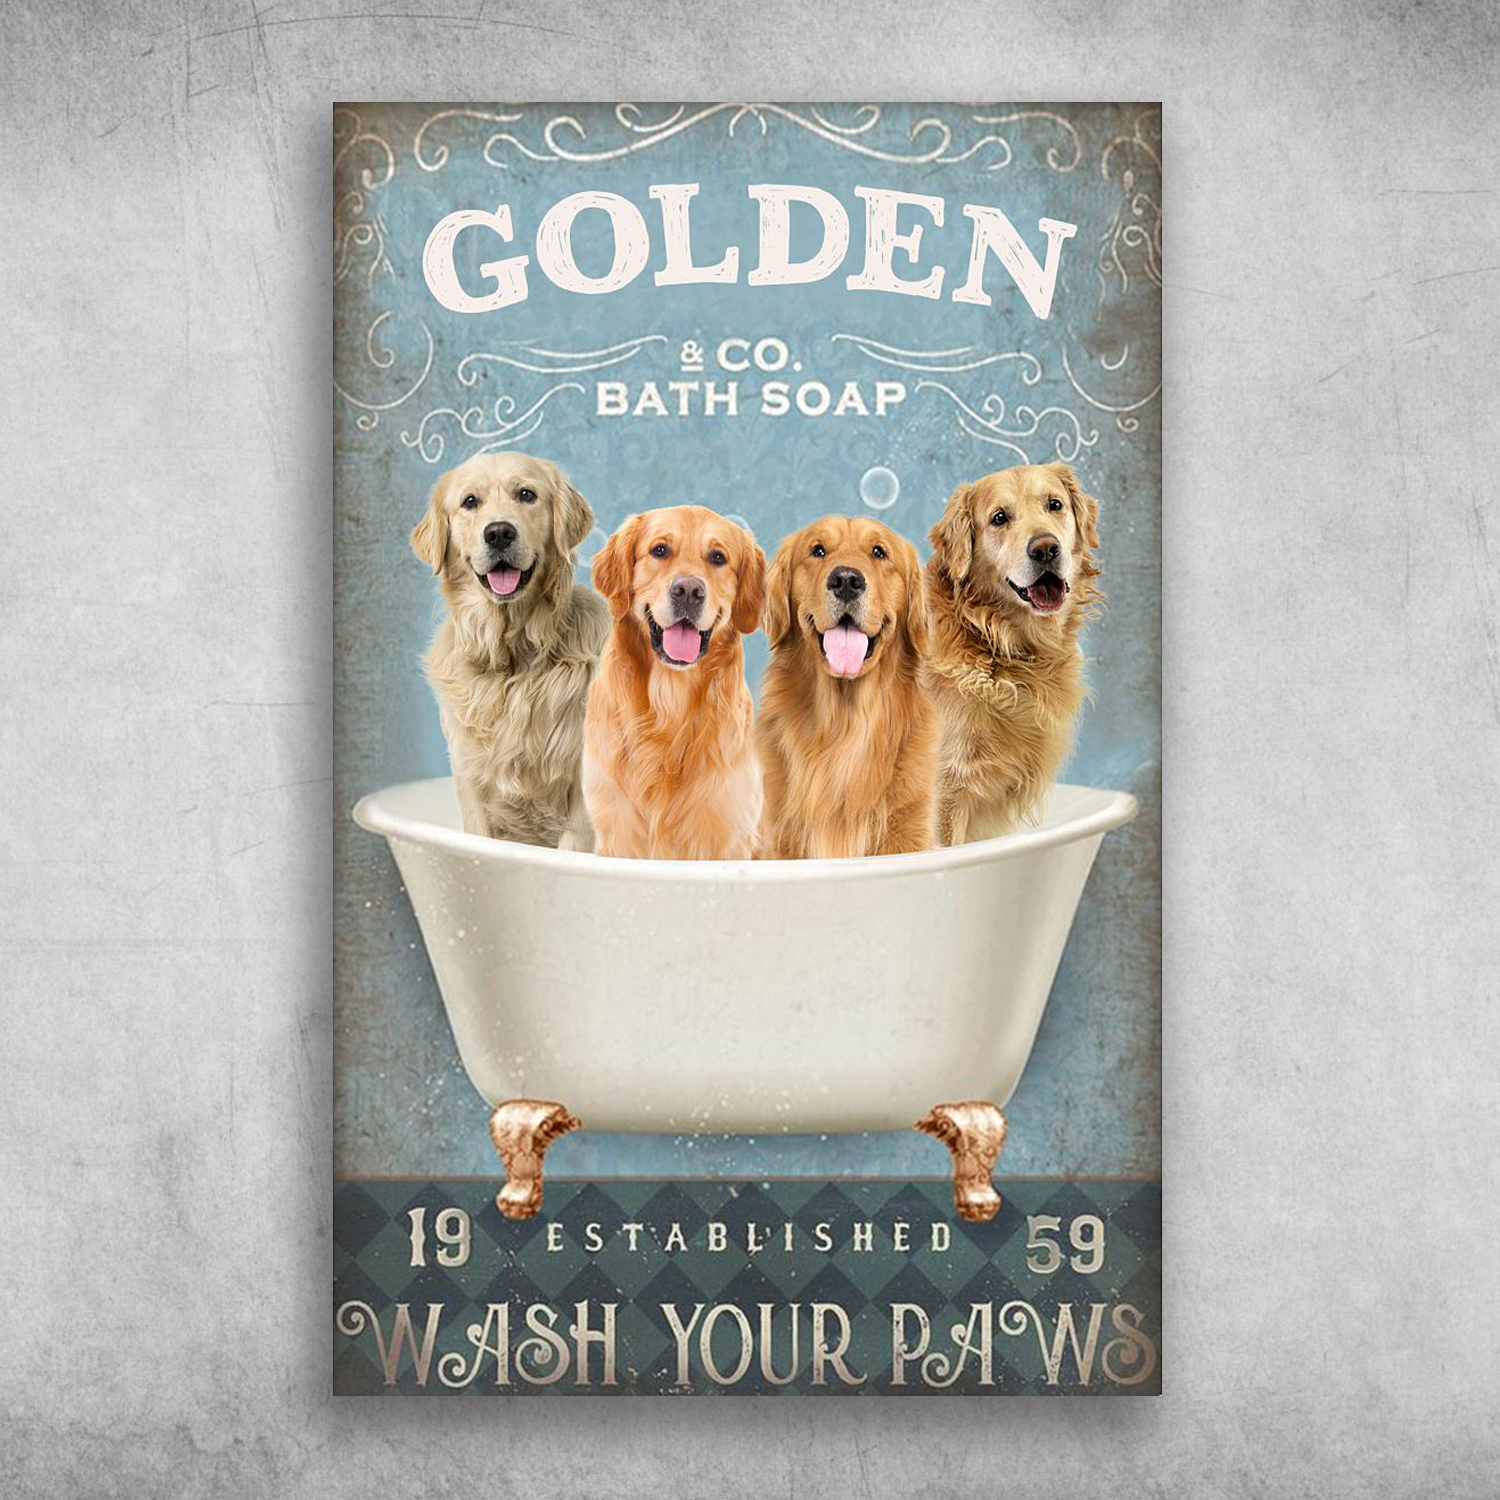 Golden Dog Bath Soap Established Wash Your Paws